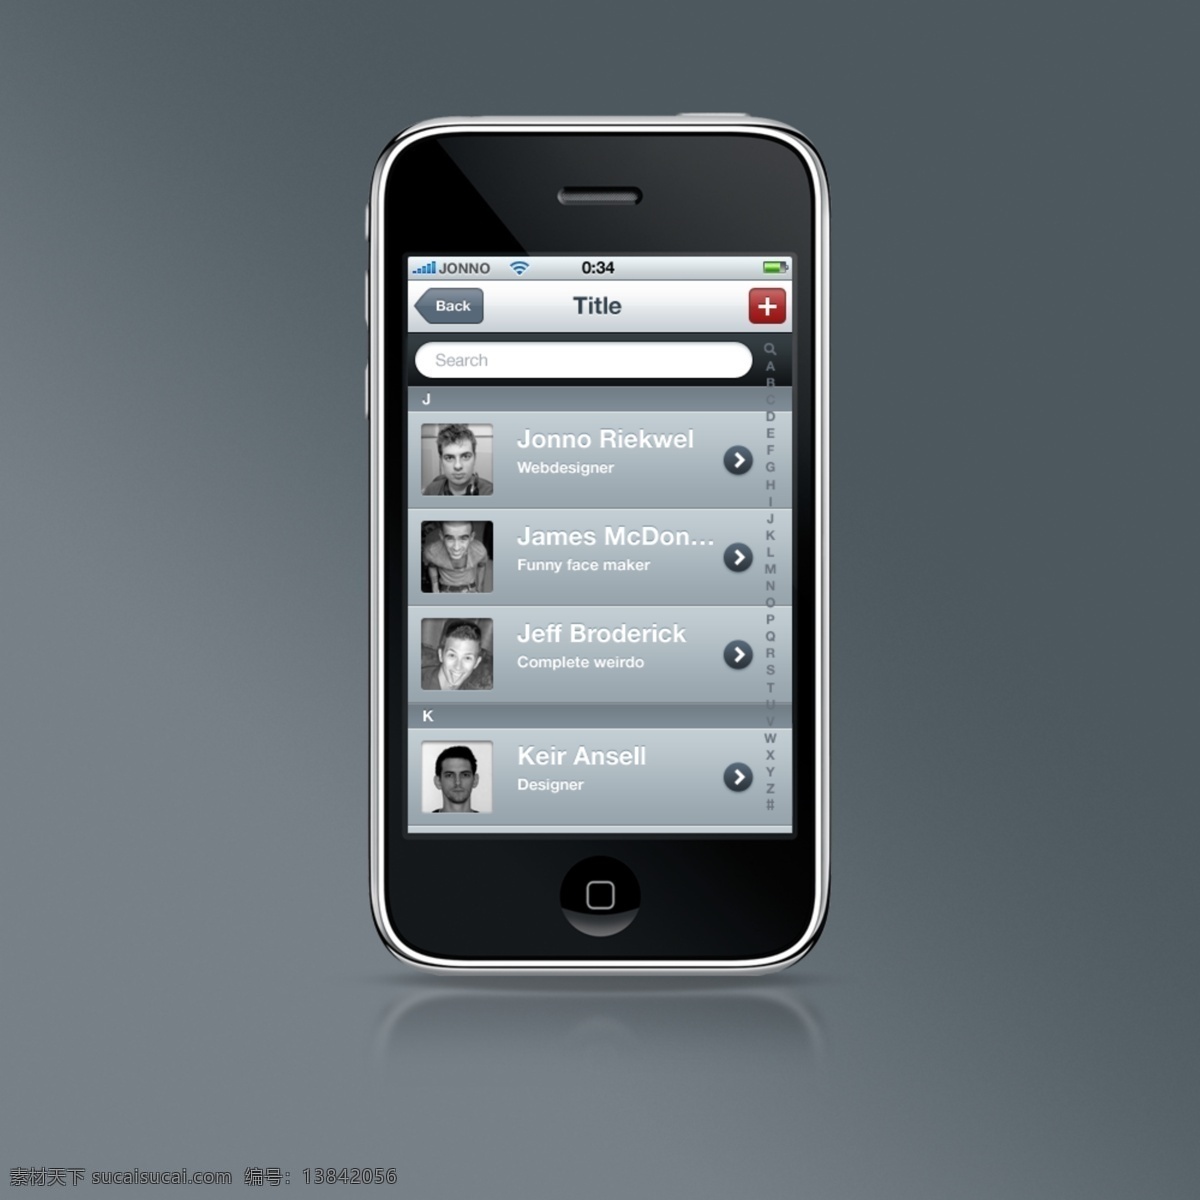 阿凡 达 清洁 iphone 联系人 名单 gui web 阿凡达 创意 高分辨率 接口 列表 免费 时尚的 现代的 原始的 质量 新鲜的 设计新的 hd 元素 用户界面 ui元素 详细的 接触 联系人列表 的名字 矢量图